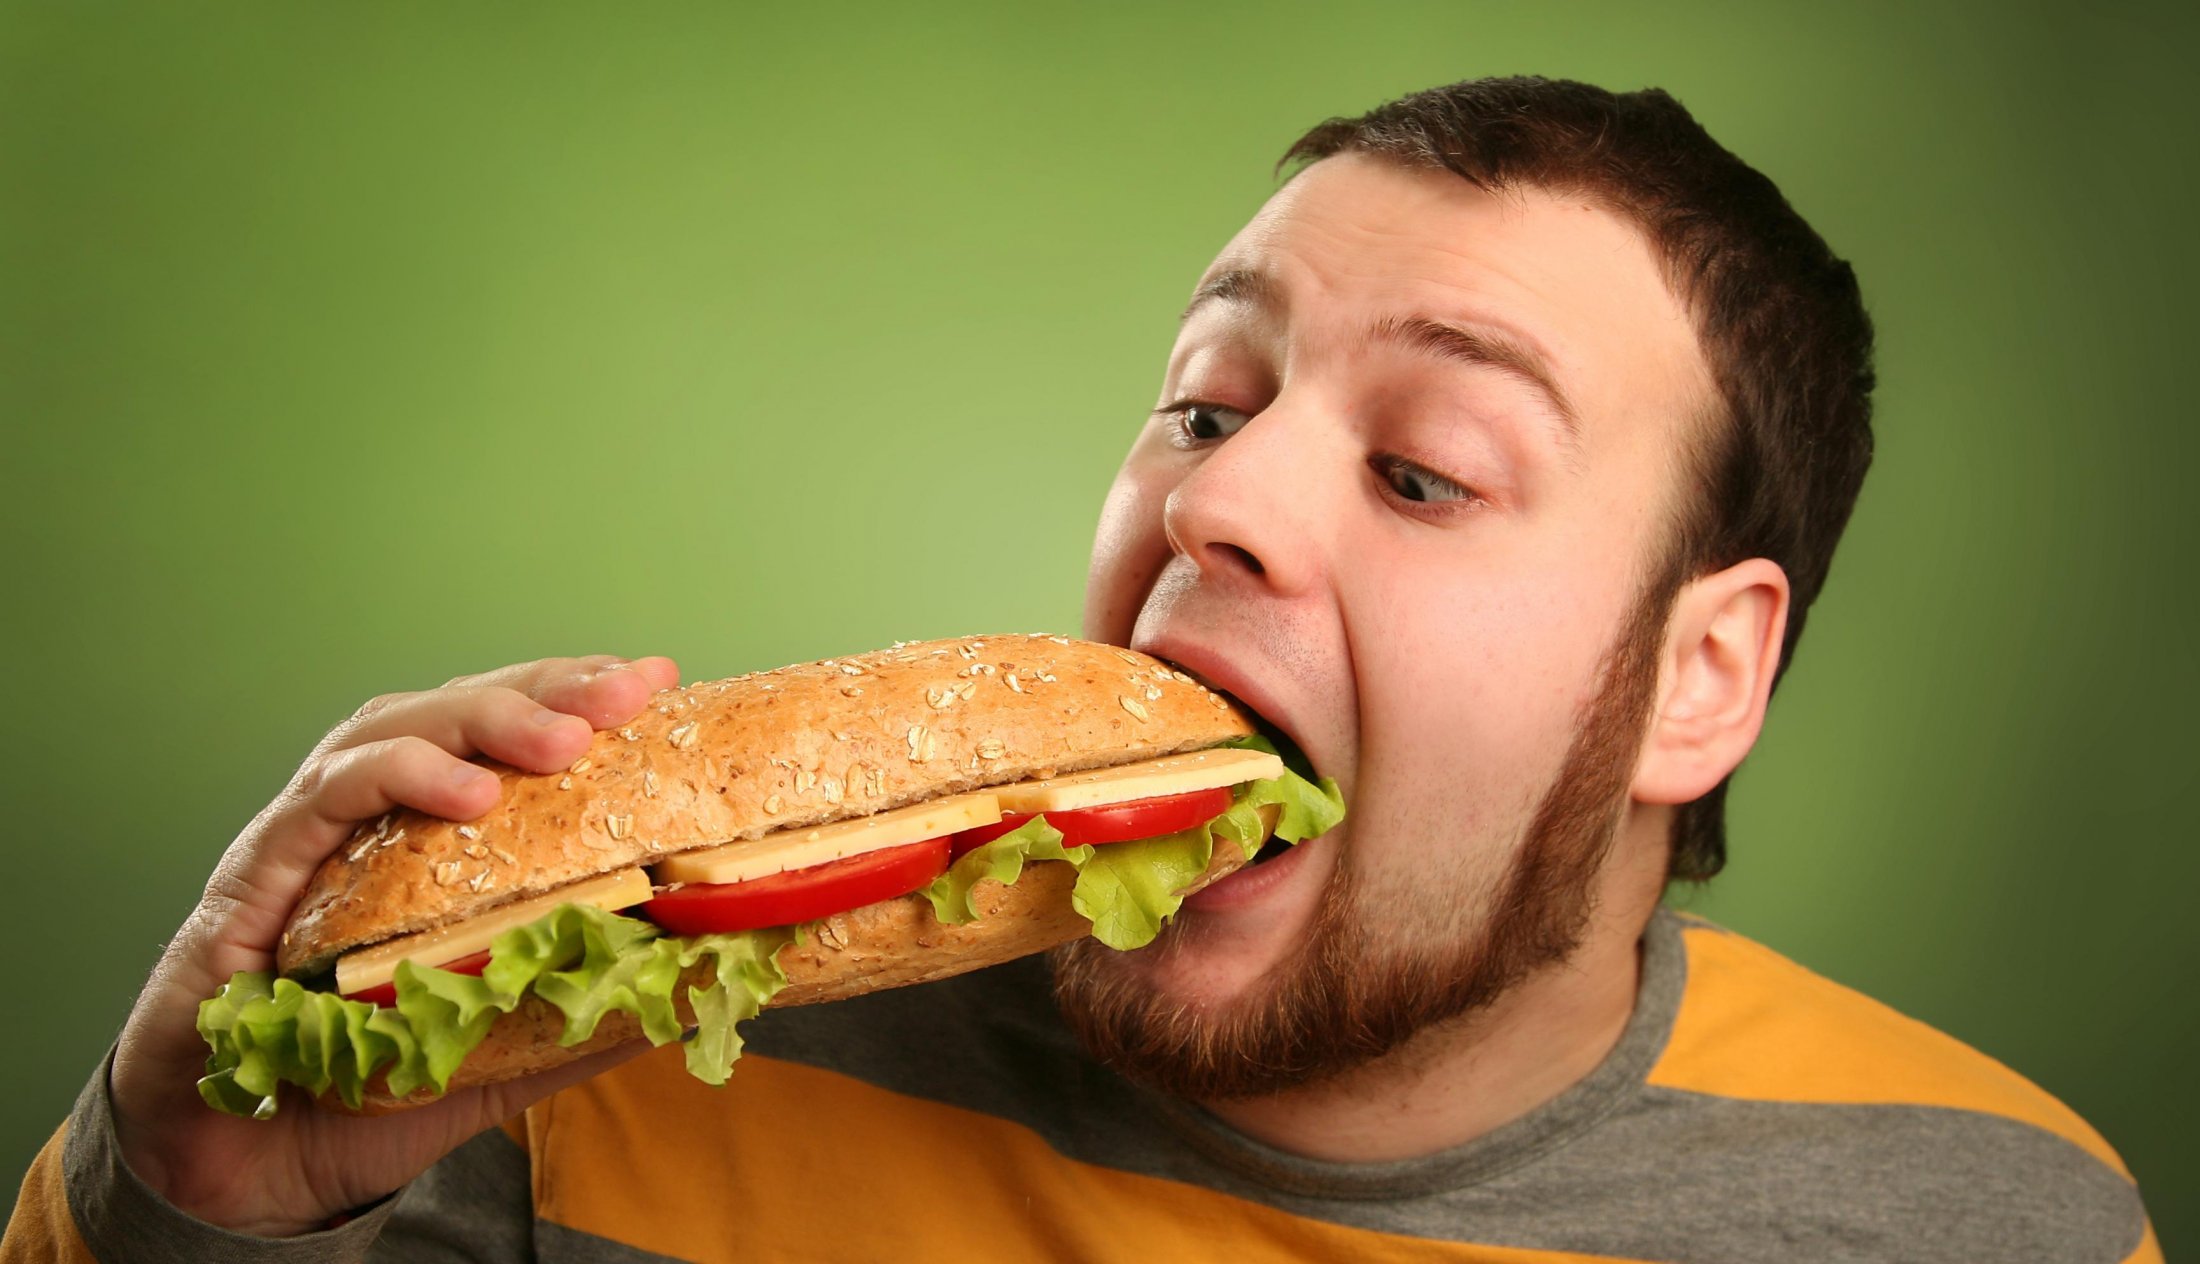 Проду ест. Человек с едой. Человек бутерброд. Человек кушает. Ест бутерброд.